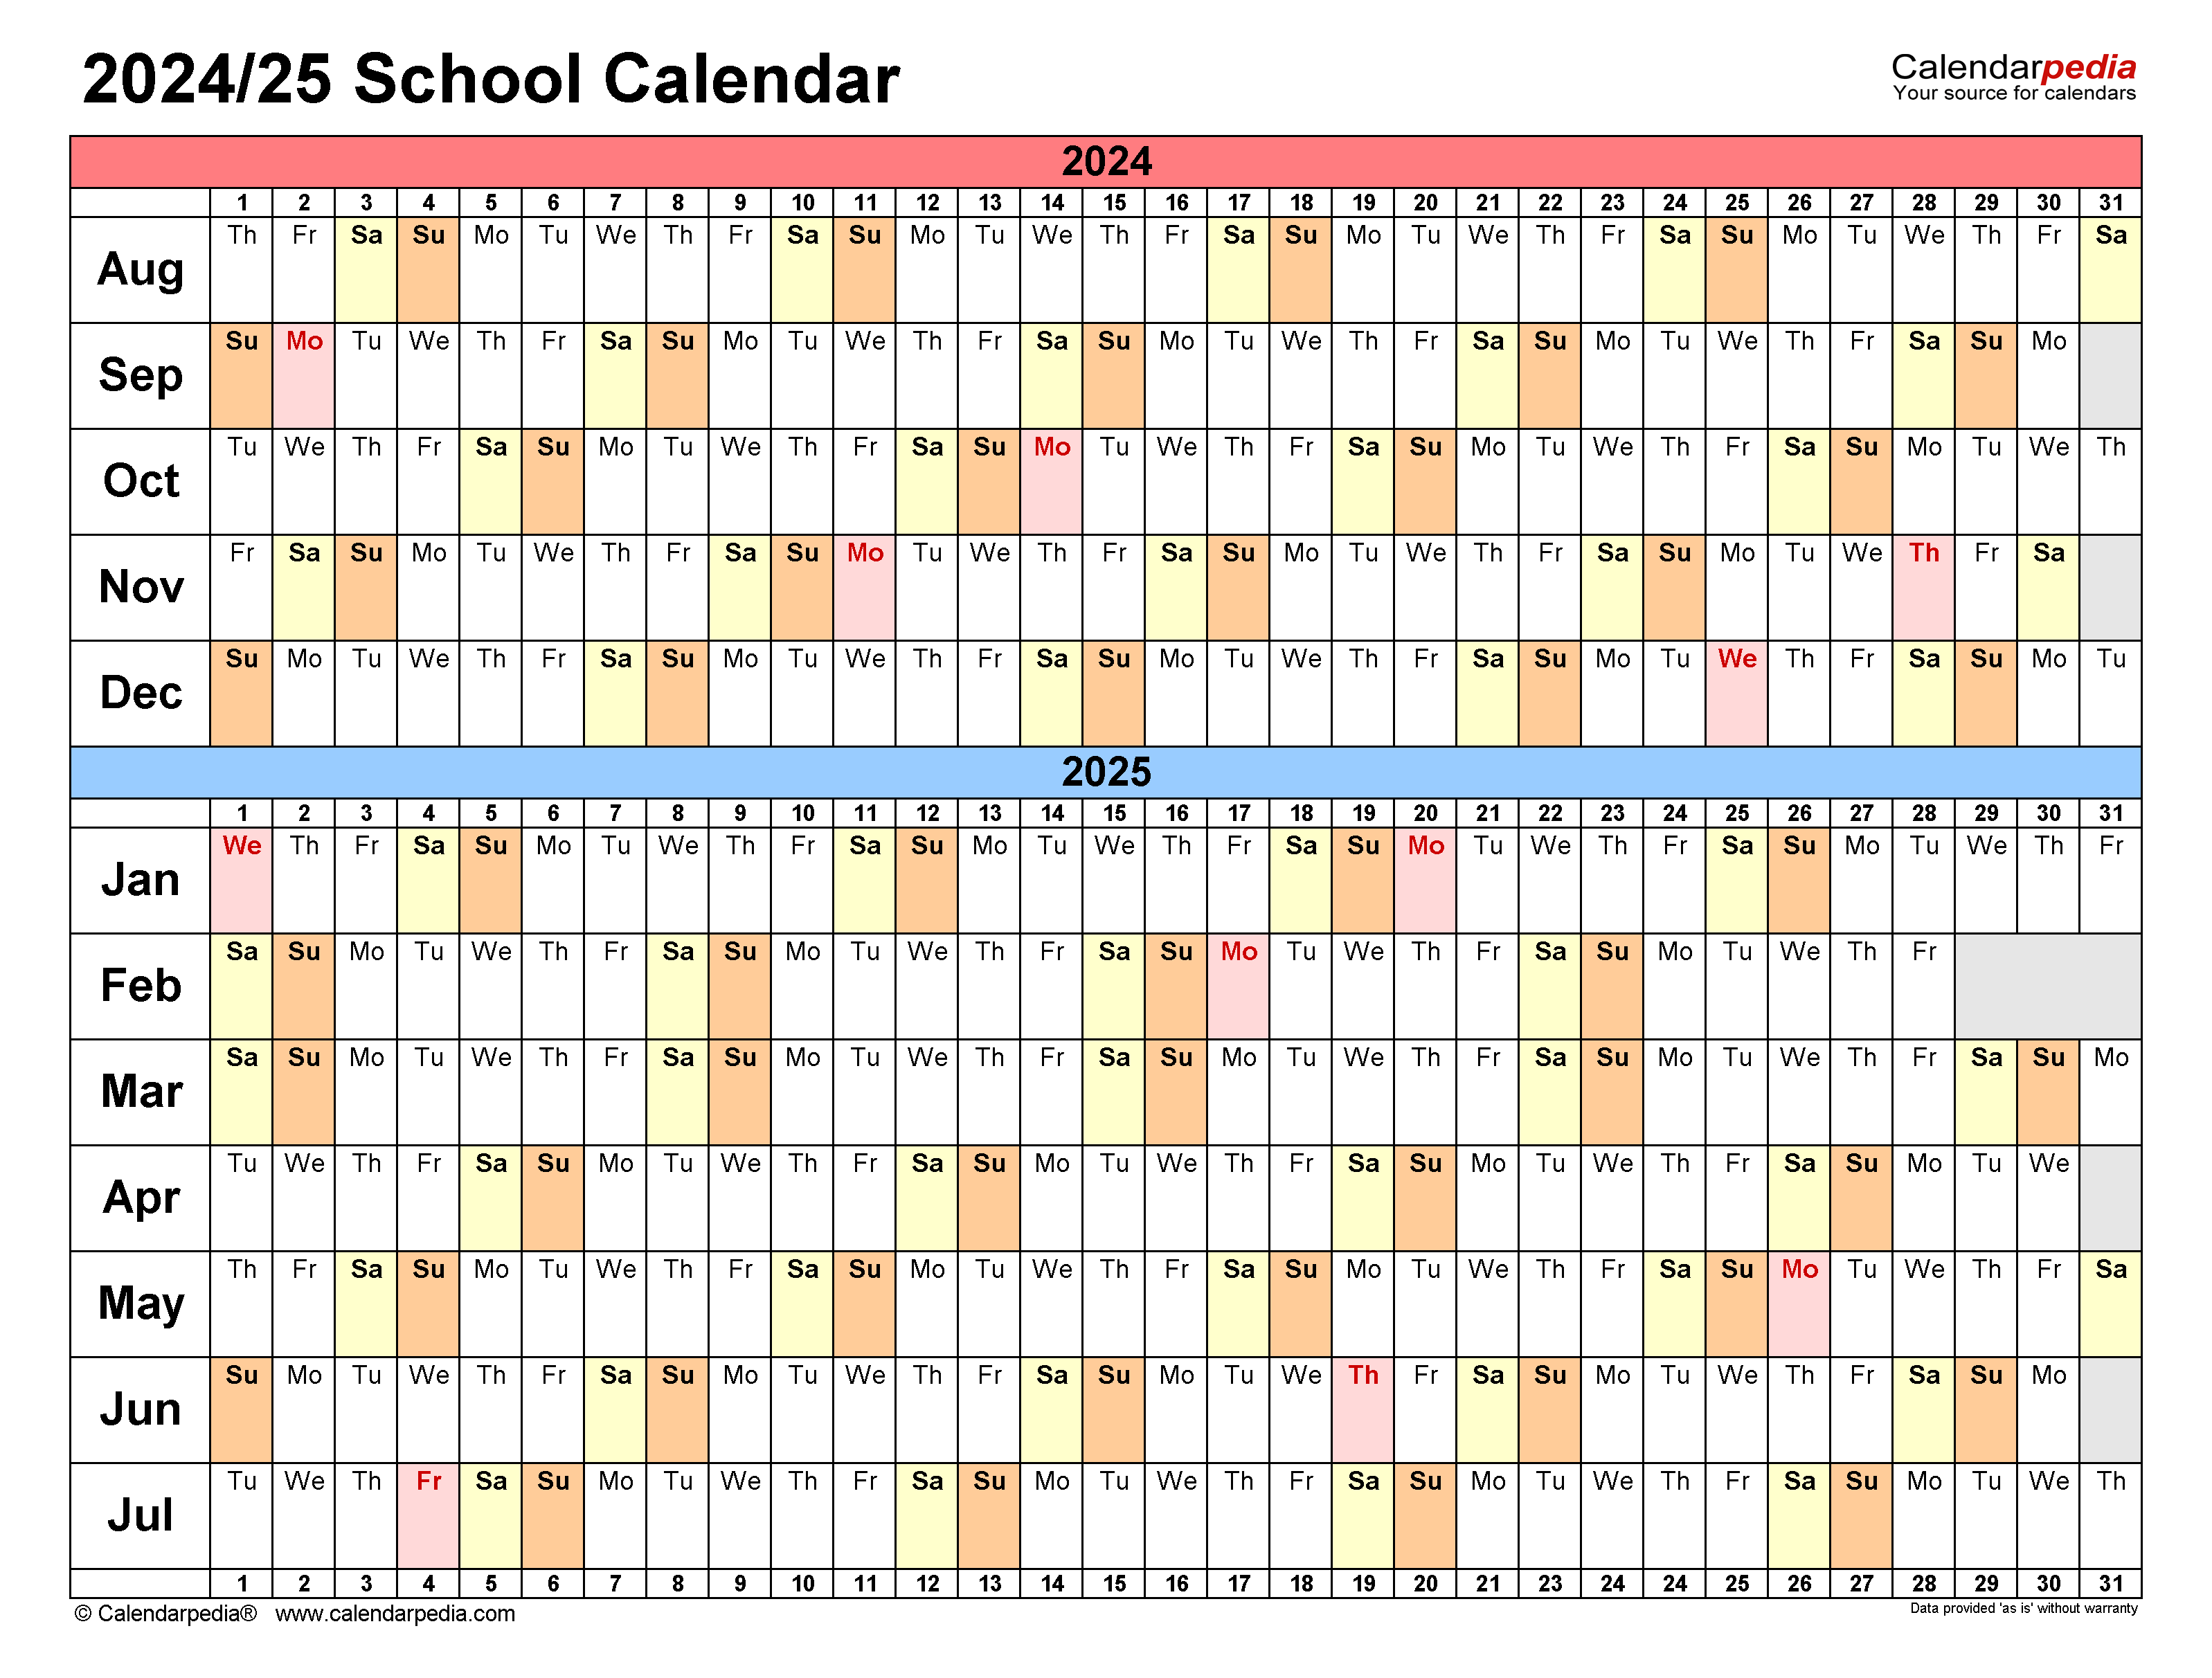 ccisd-school-calendar-2024-25-2024-calendar-printable